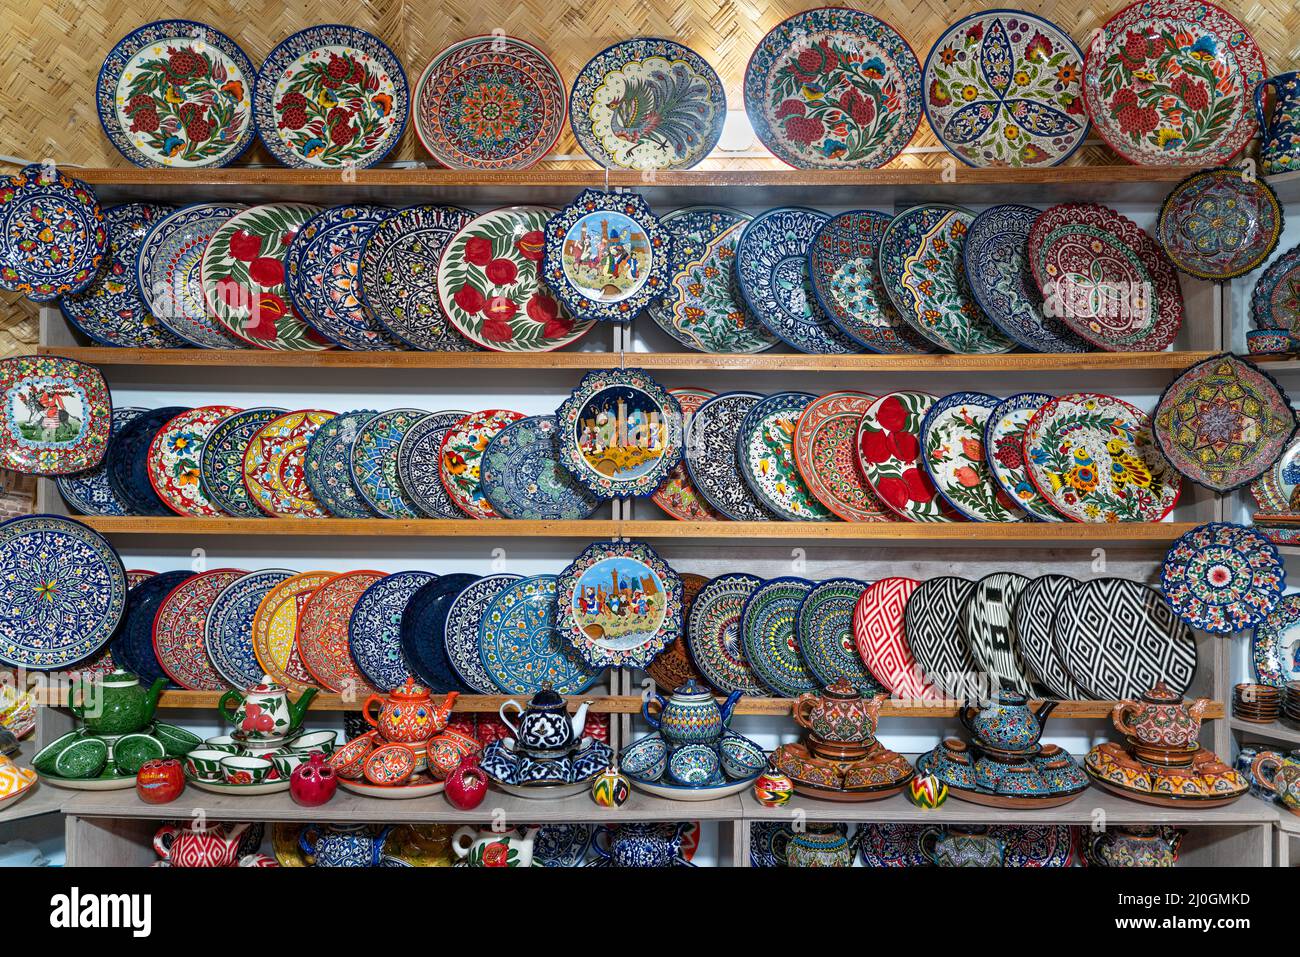 El mercado uzbeko con platos tradicionales de uzbekistán en Bujara Foto de stock